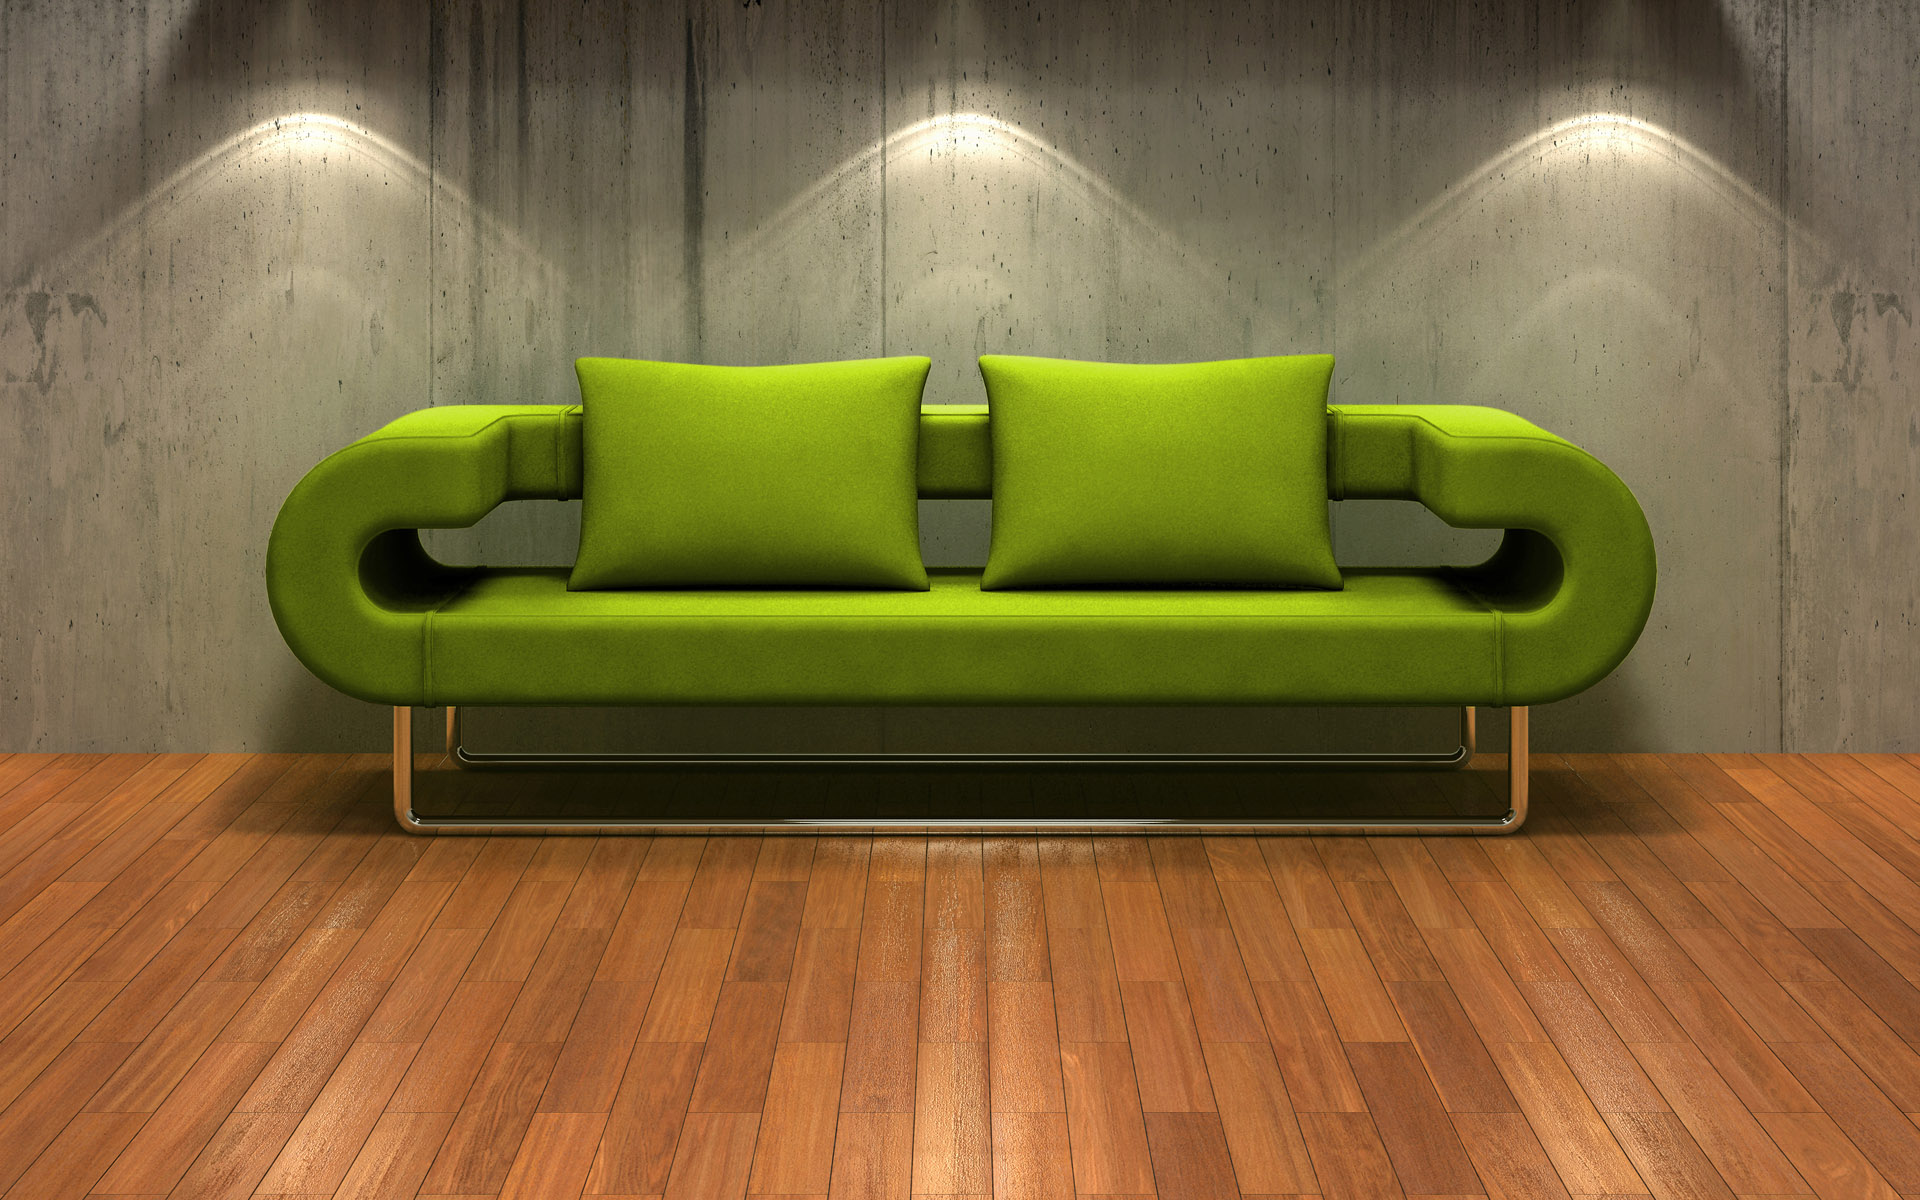 couch, interior, furniture, wood floor - desktop wallpaper